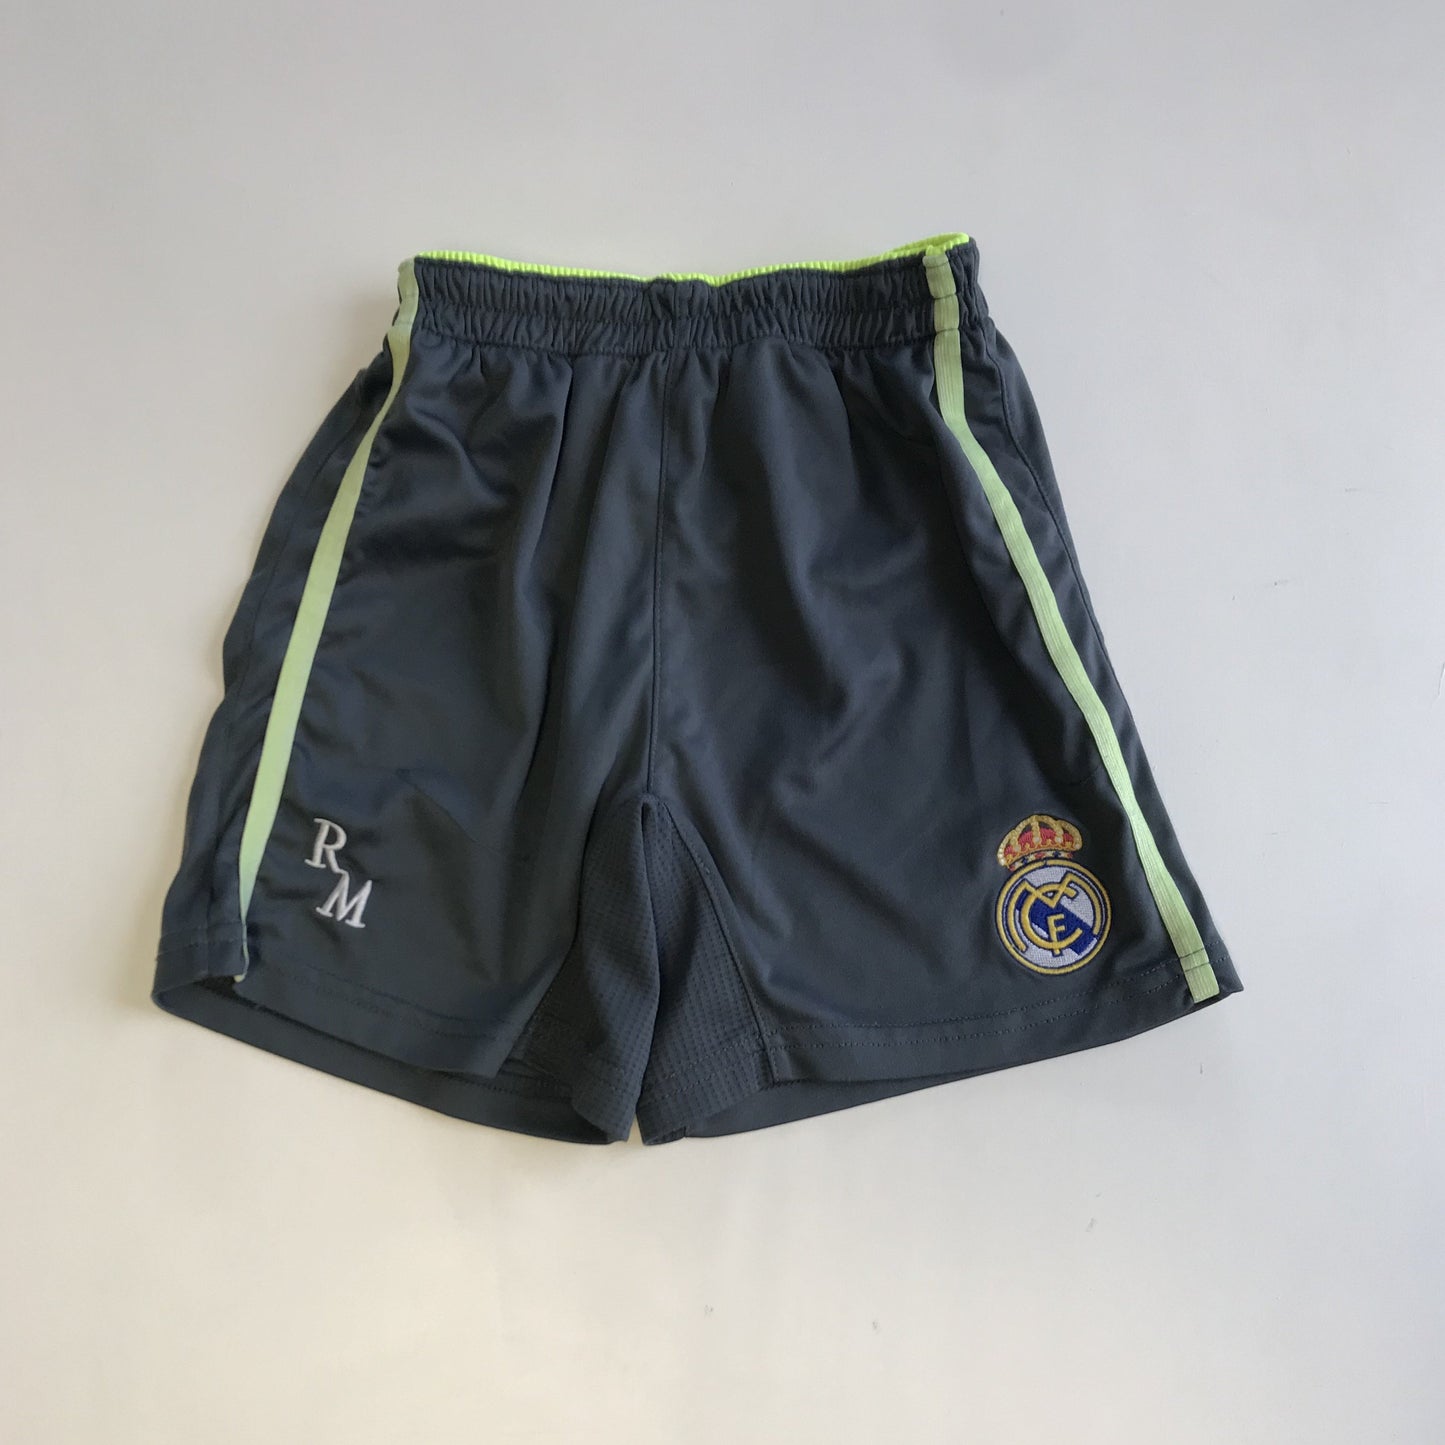 Shorts - Real Madrid  - Age 6